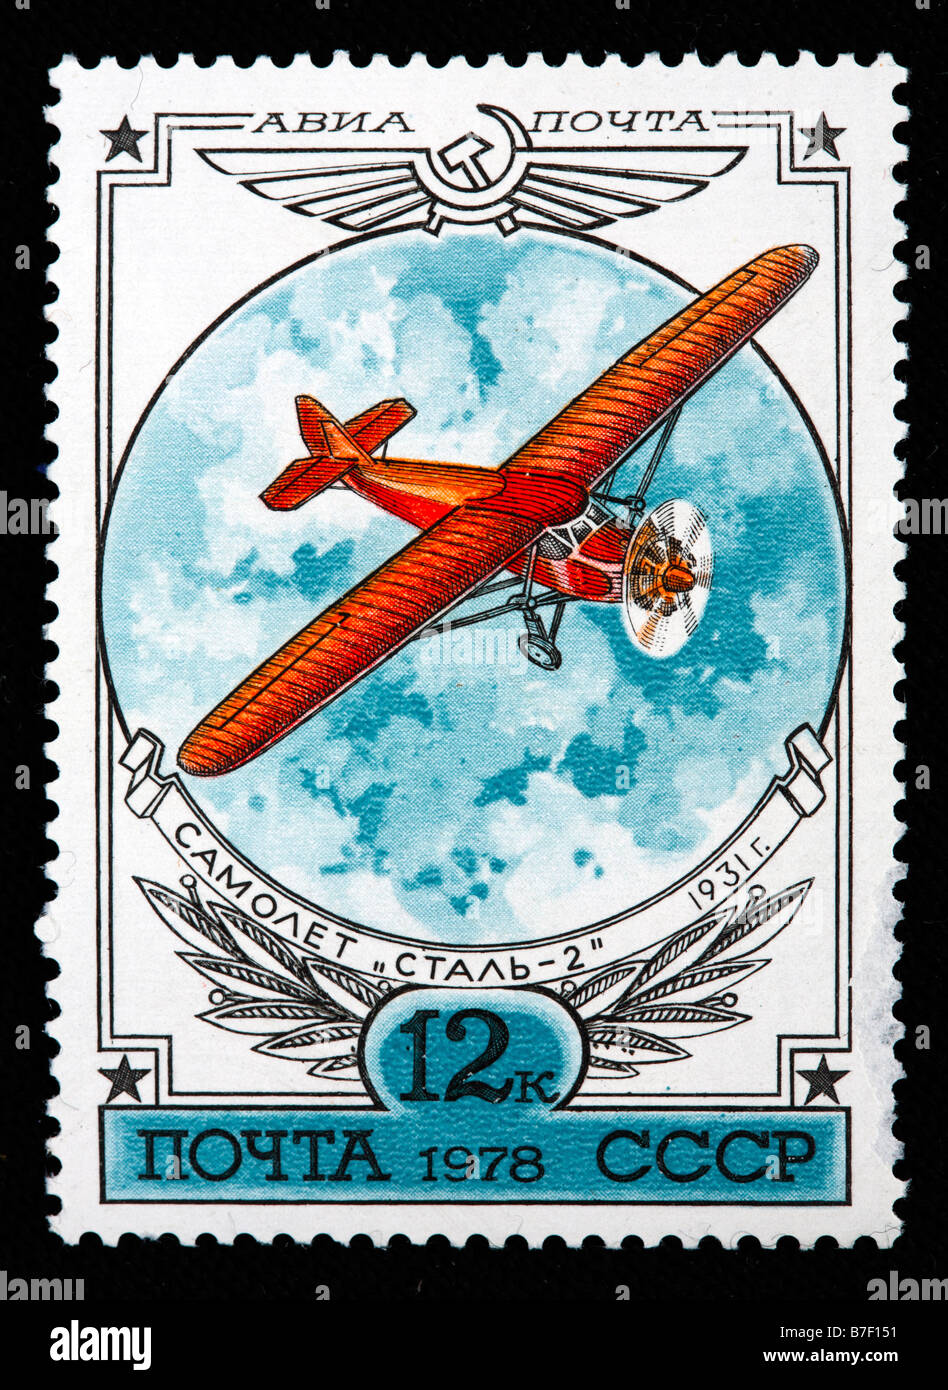 Histoire de l'aviation, avion Russe 'Stal 2' (1931), timbre-poste, URSS, 1978 Banque D'Images